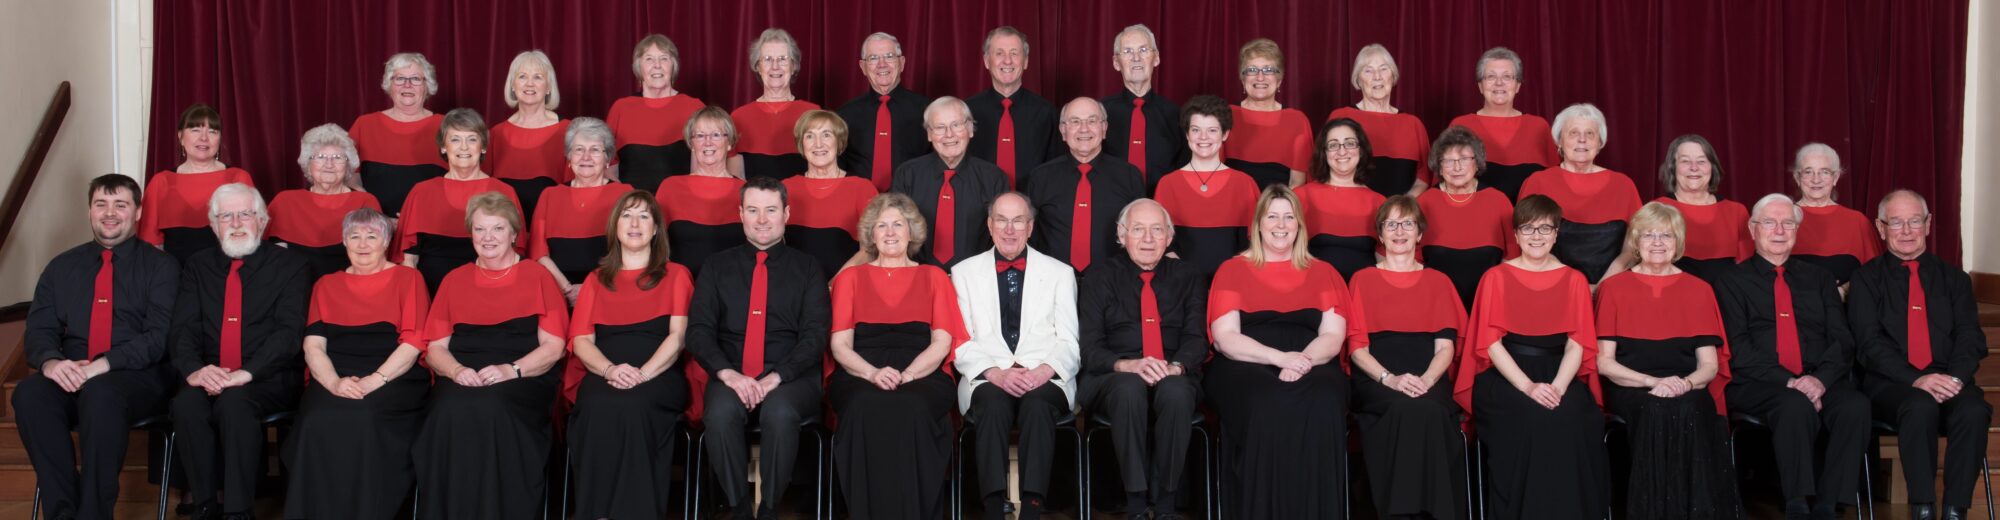 Steventon Choral Society